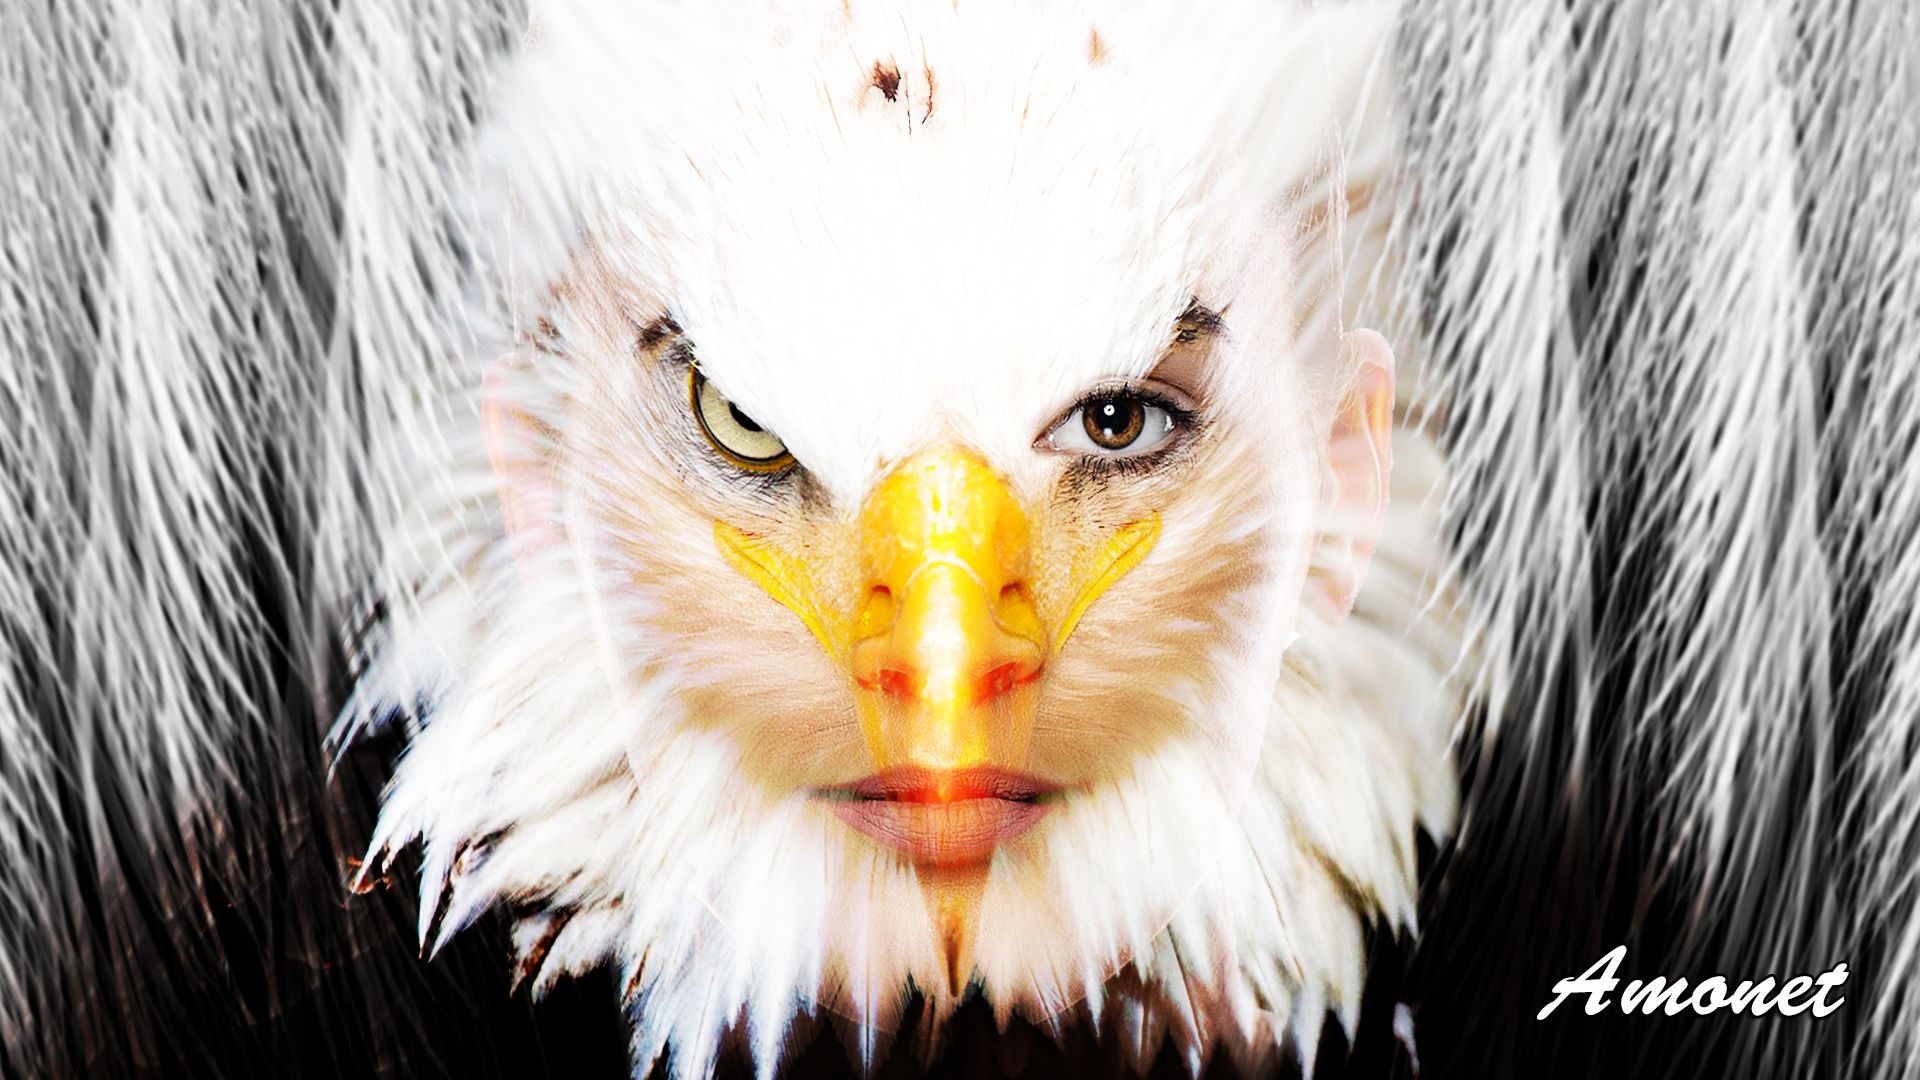 Mujer águila 7.jpg